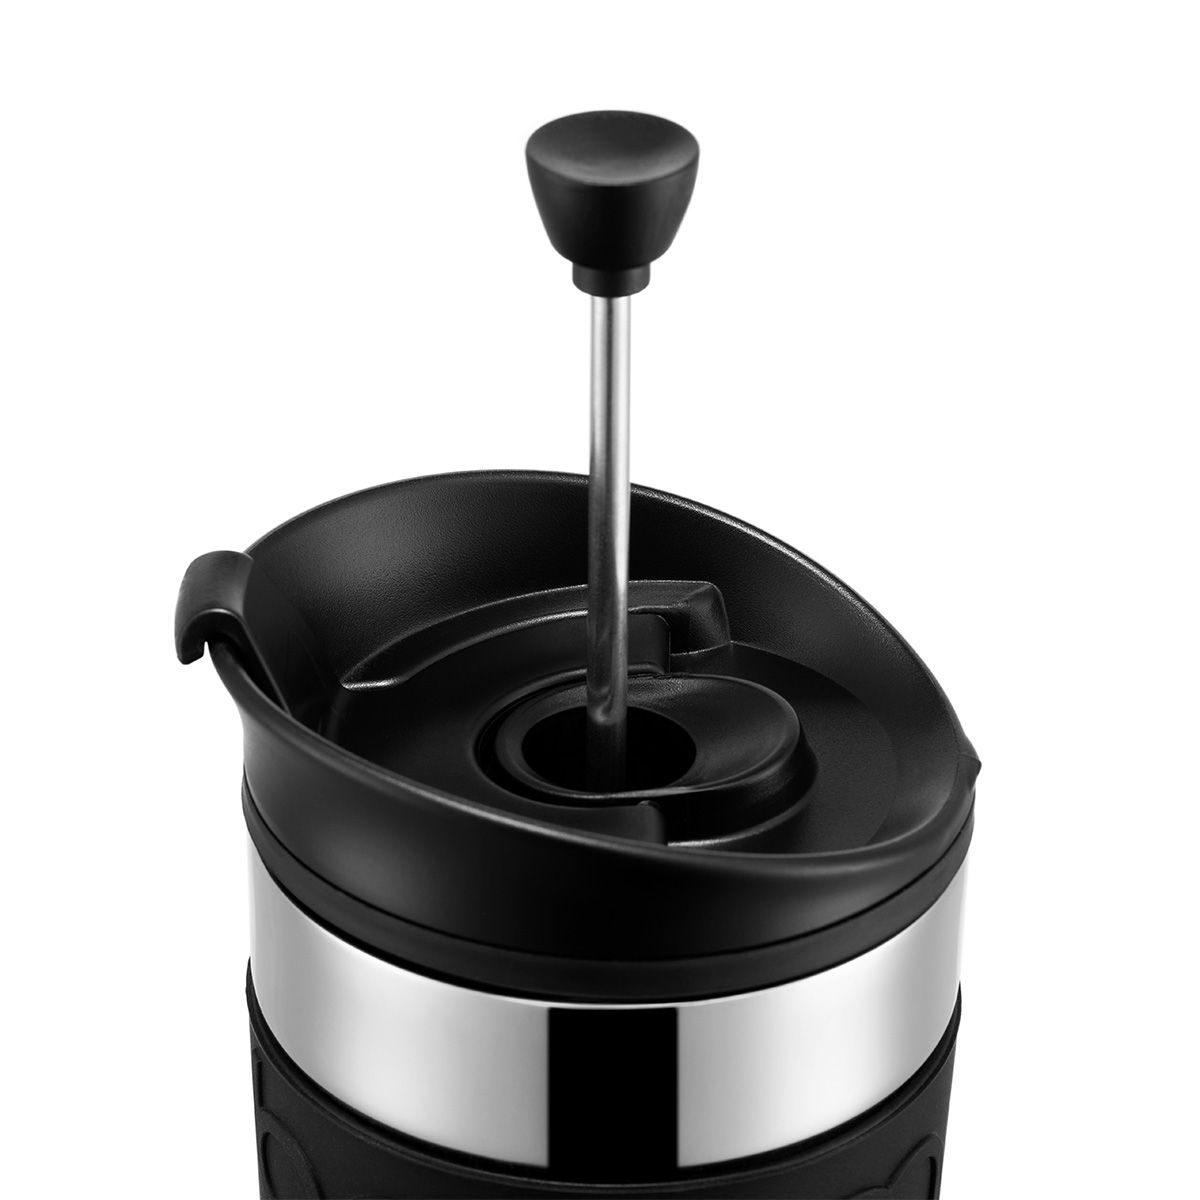 Bodum Reispers Set -koffiezetapparaat Dubbel ommuur, zwart